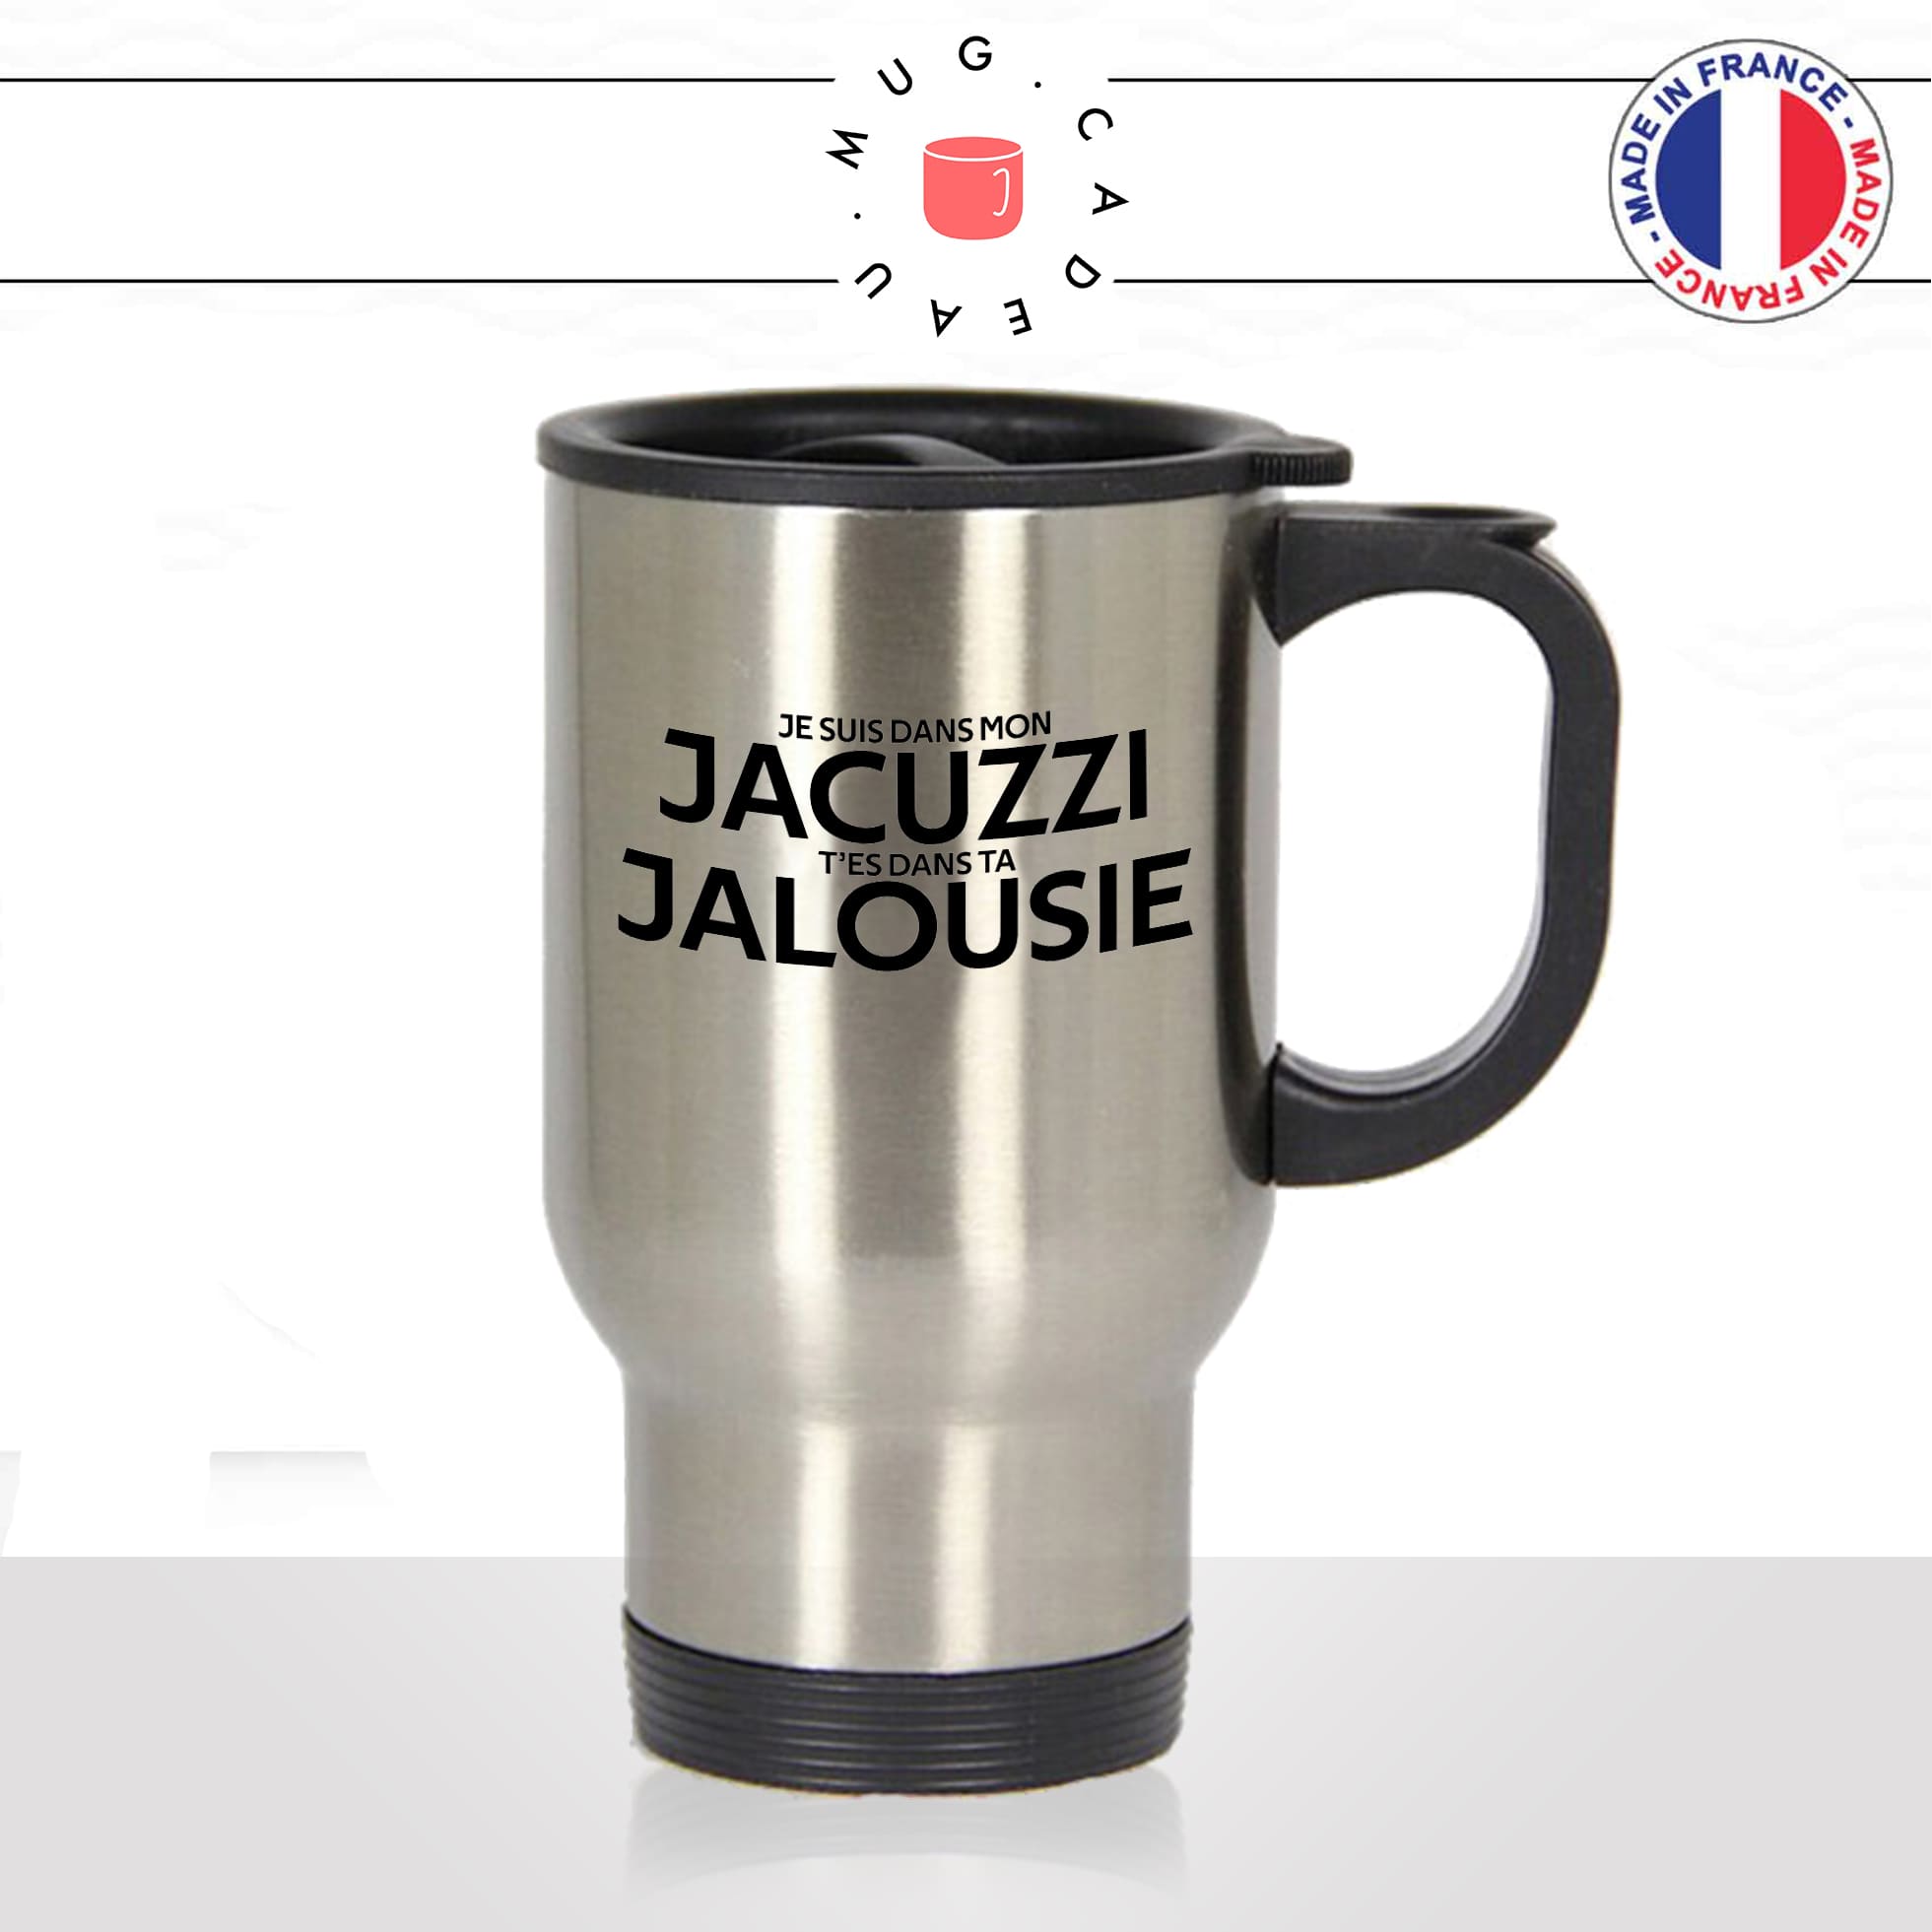 mug-tasse-thermos-isotherme-voyage-je-suis-dans-mon-jacuzzi-tes-dans-ta-jalousie-paroles-chanson-jul-humour-fun-idée-cadeau-originale-cool2